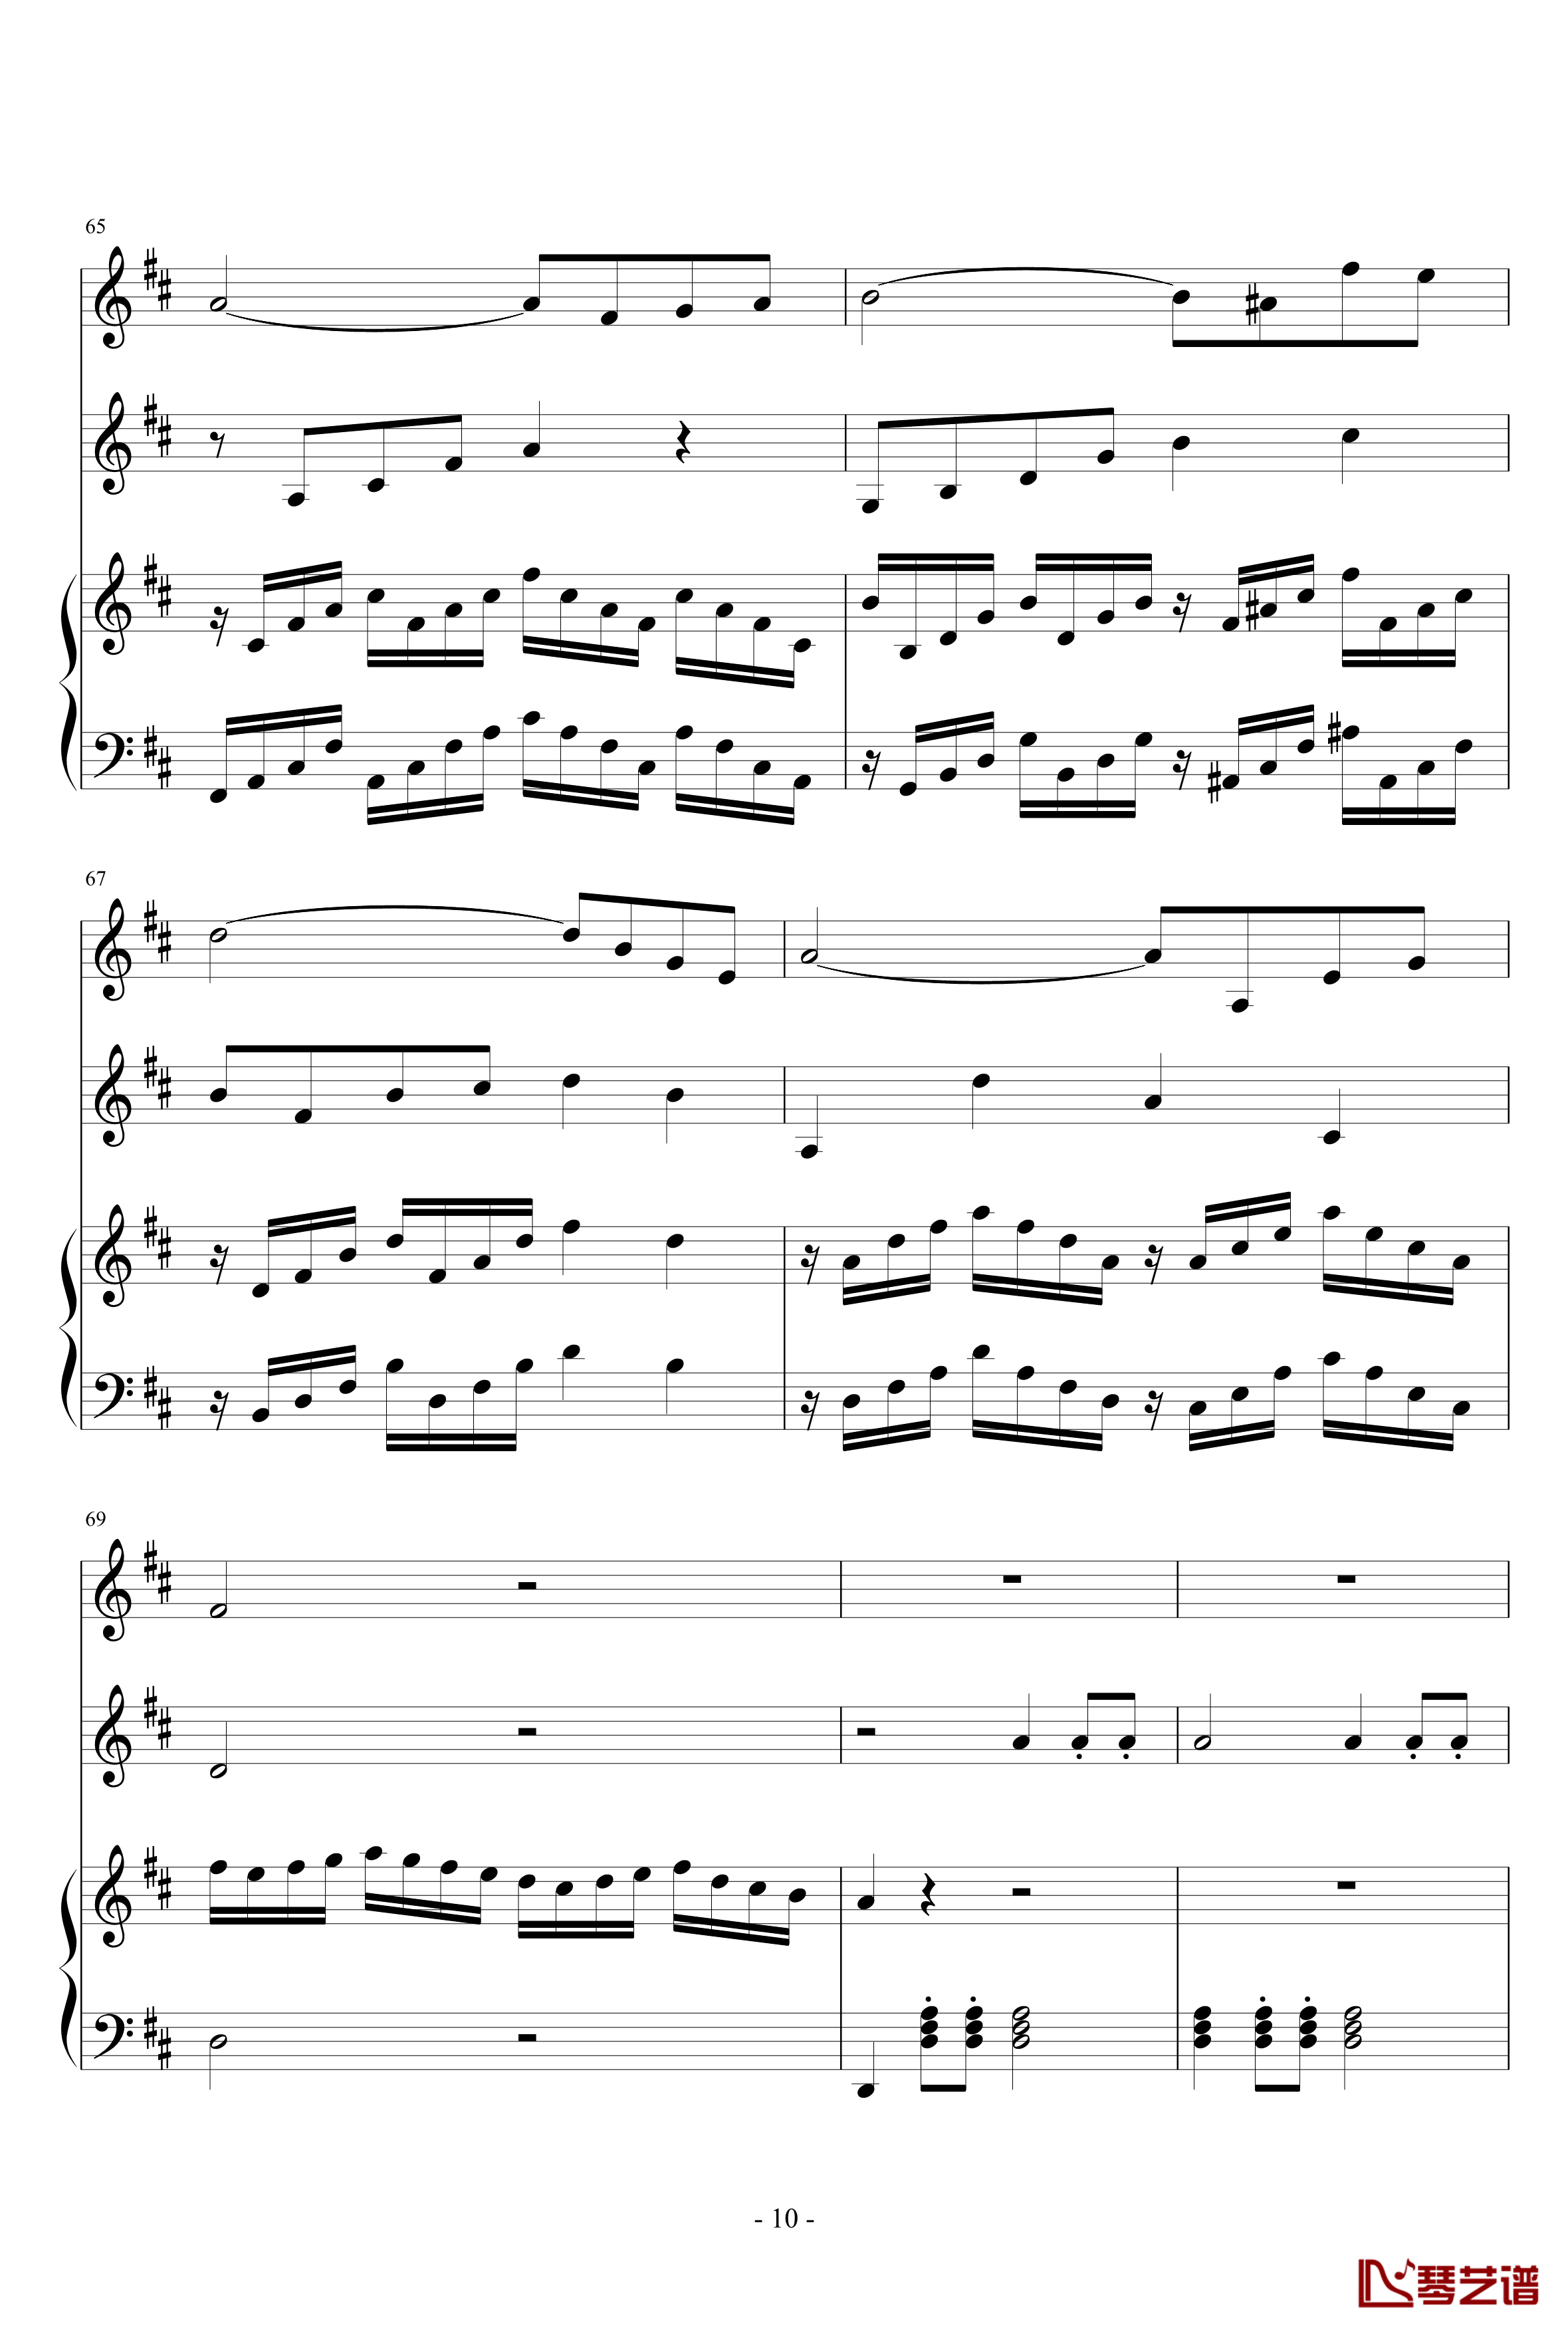 春之歌钢琴谱-nzh1934